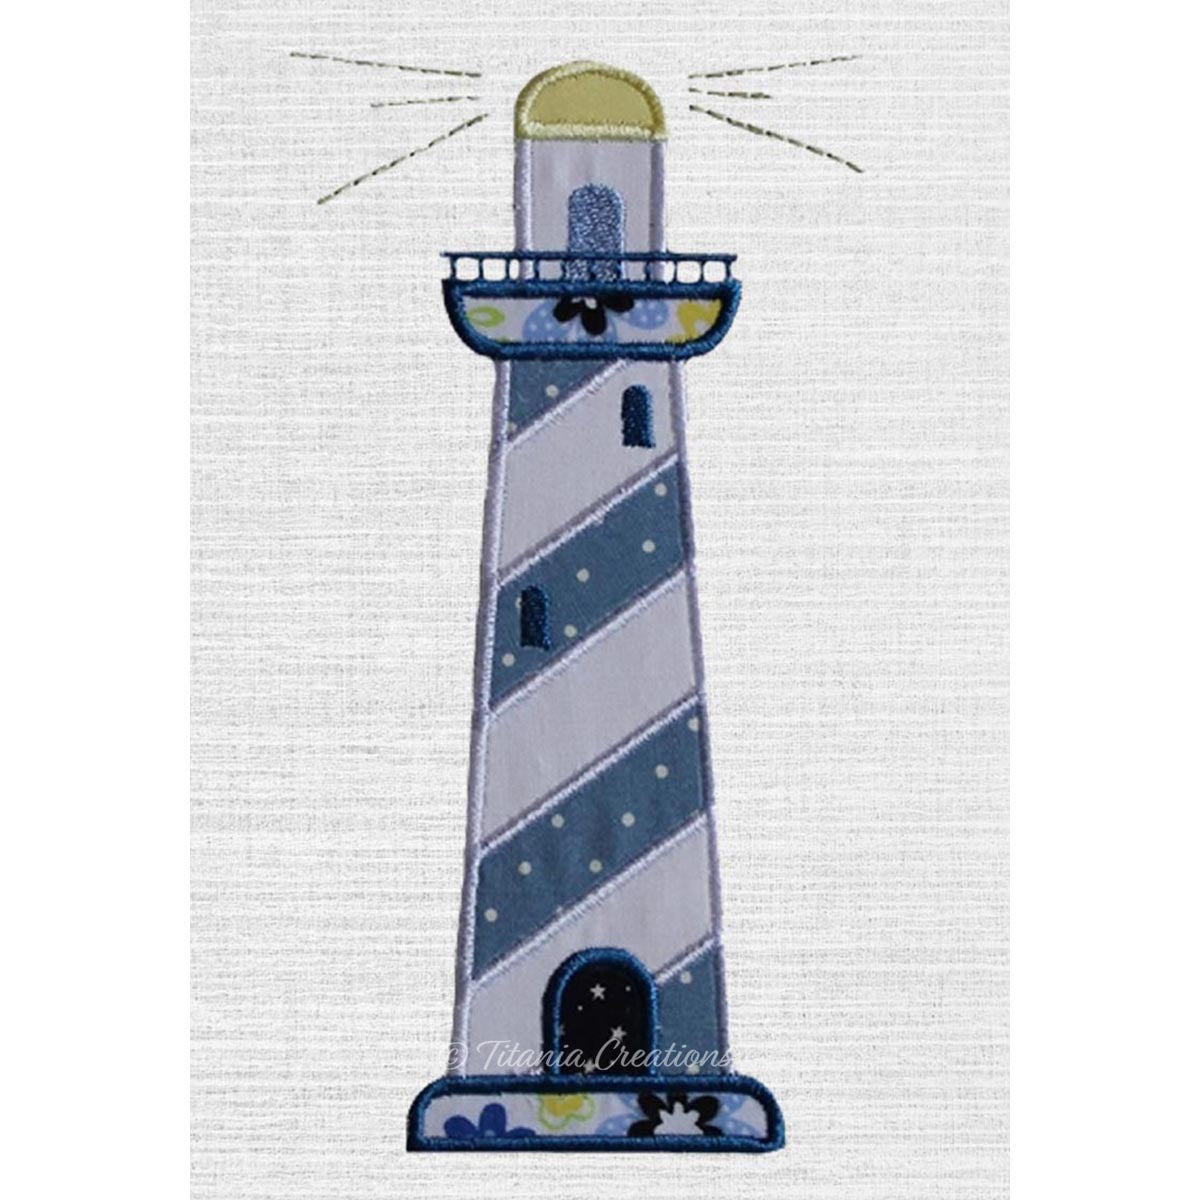 Applique Lighthouse 5x7